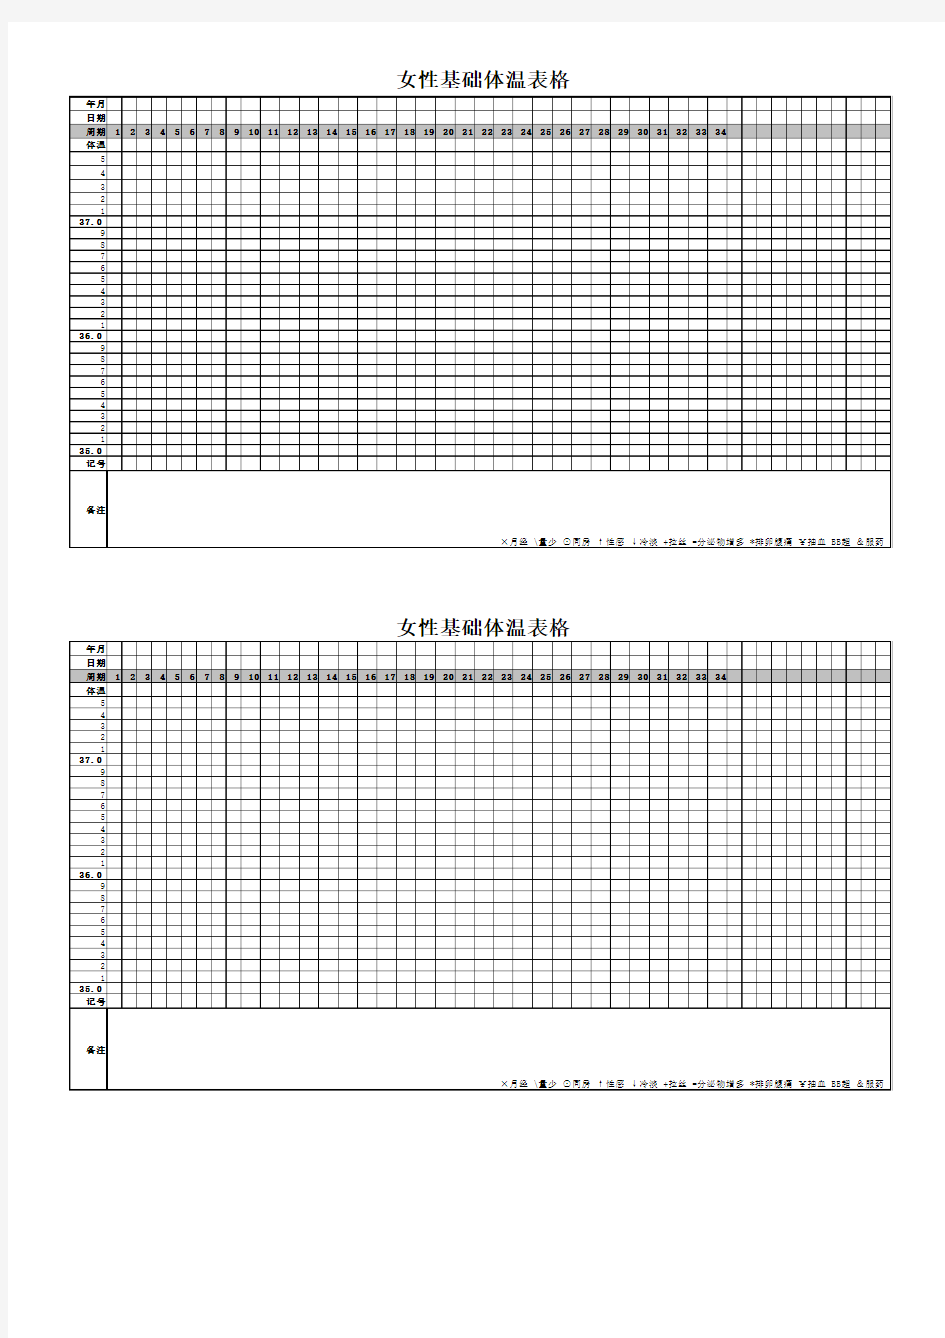 最详细实用的女性基础体温表(可直接打印)